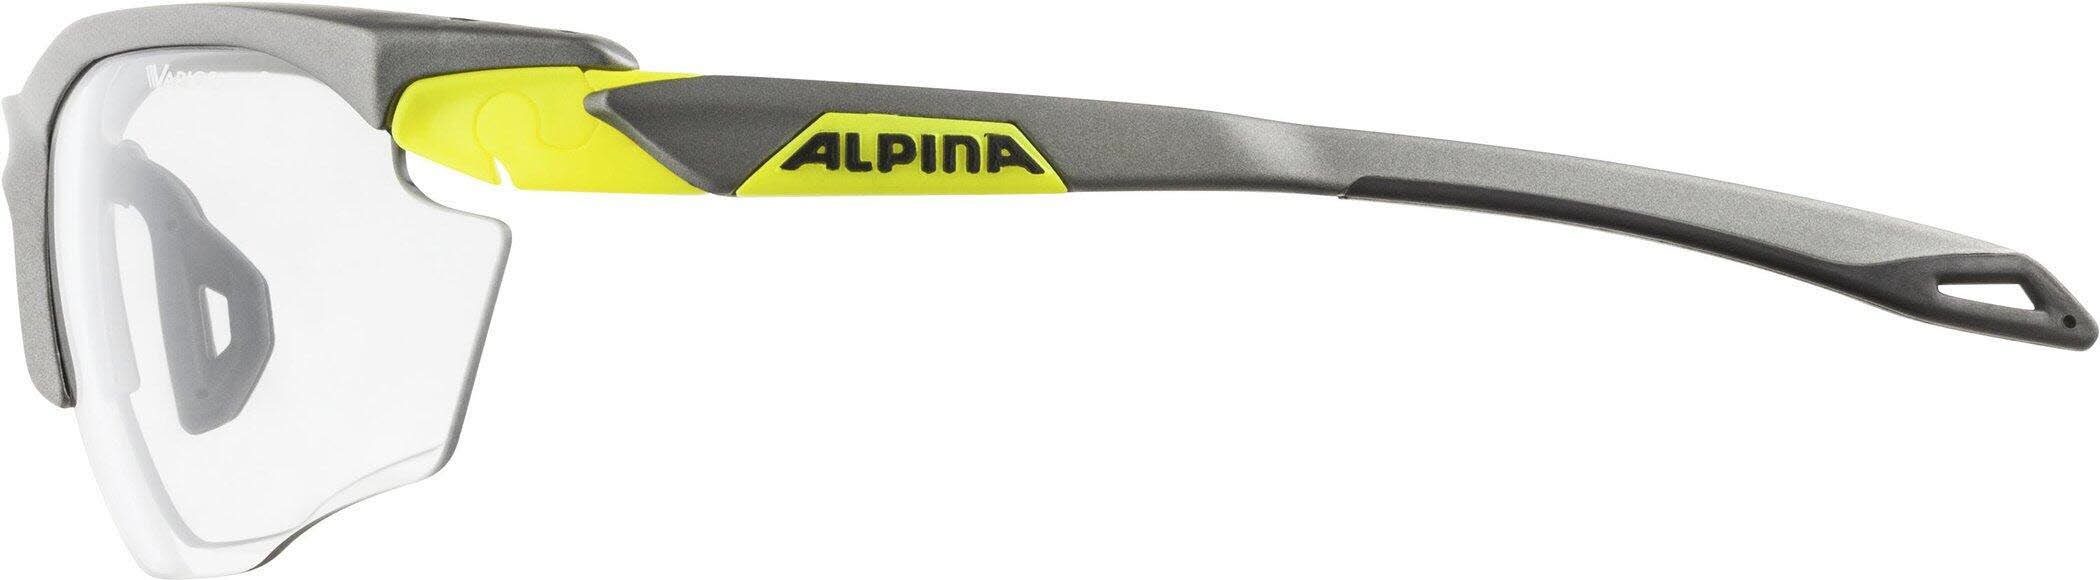 Alpina tin-neon-yellow Skibrille matt